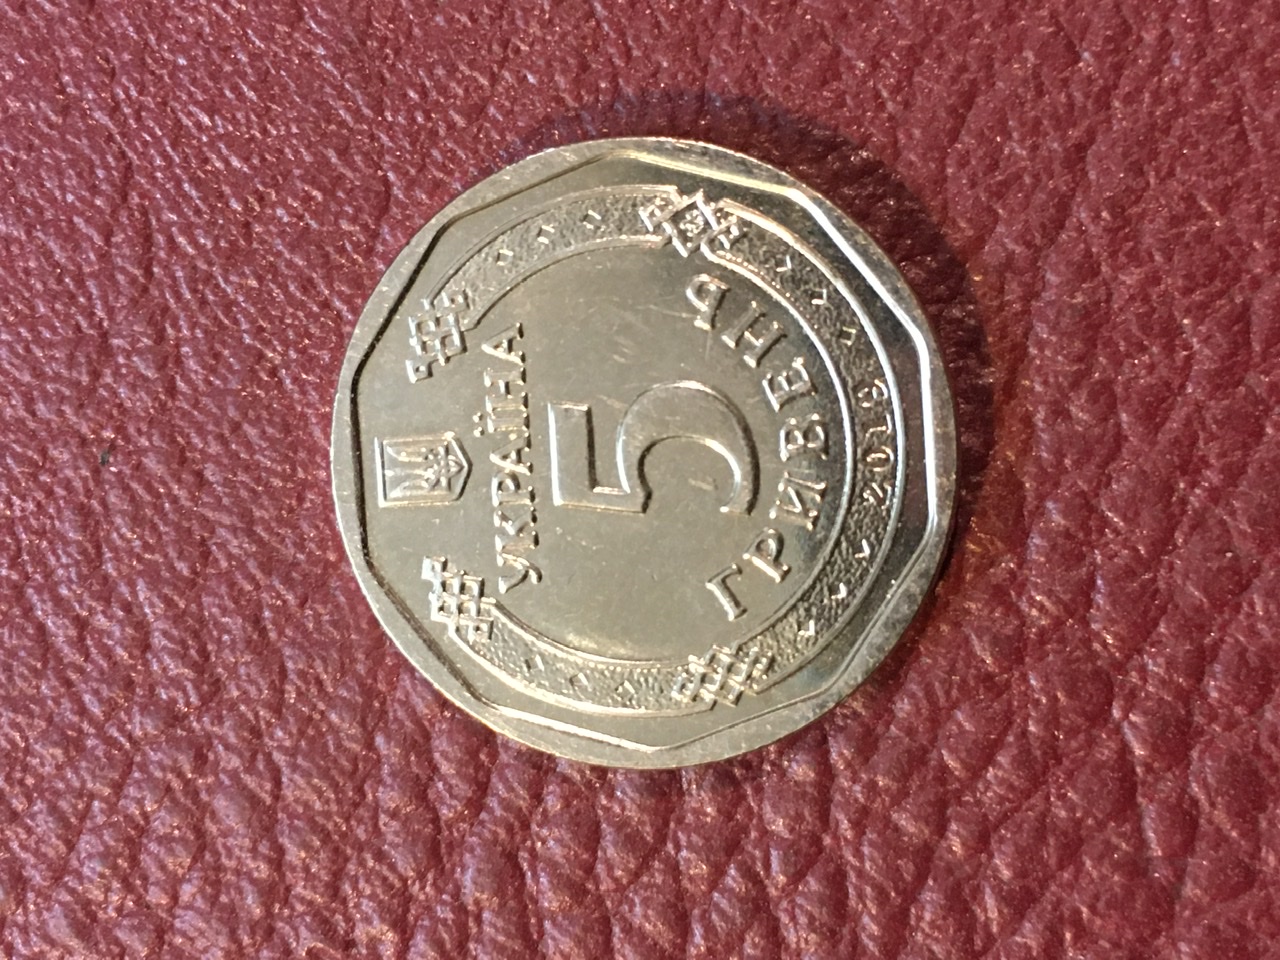 سکه زیبای کشور مغولستان با تصویر چنگیز خان با کیفیت بانکی زیبا و کمیاب